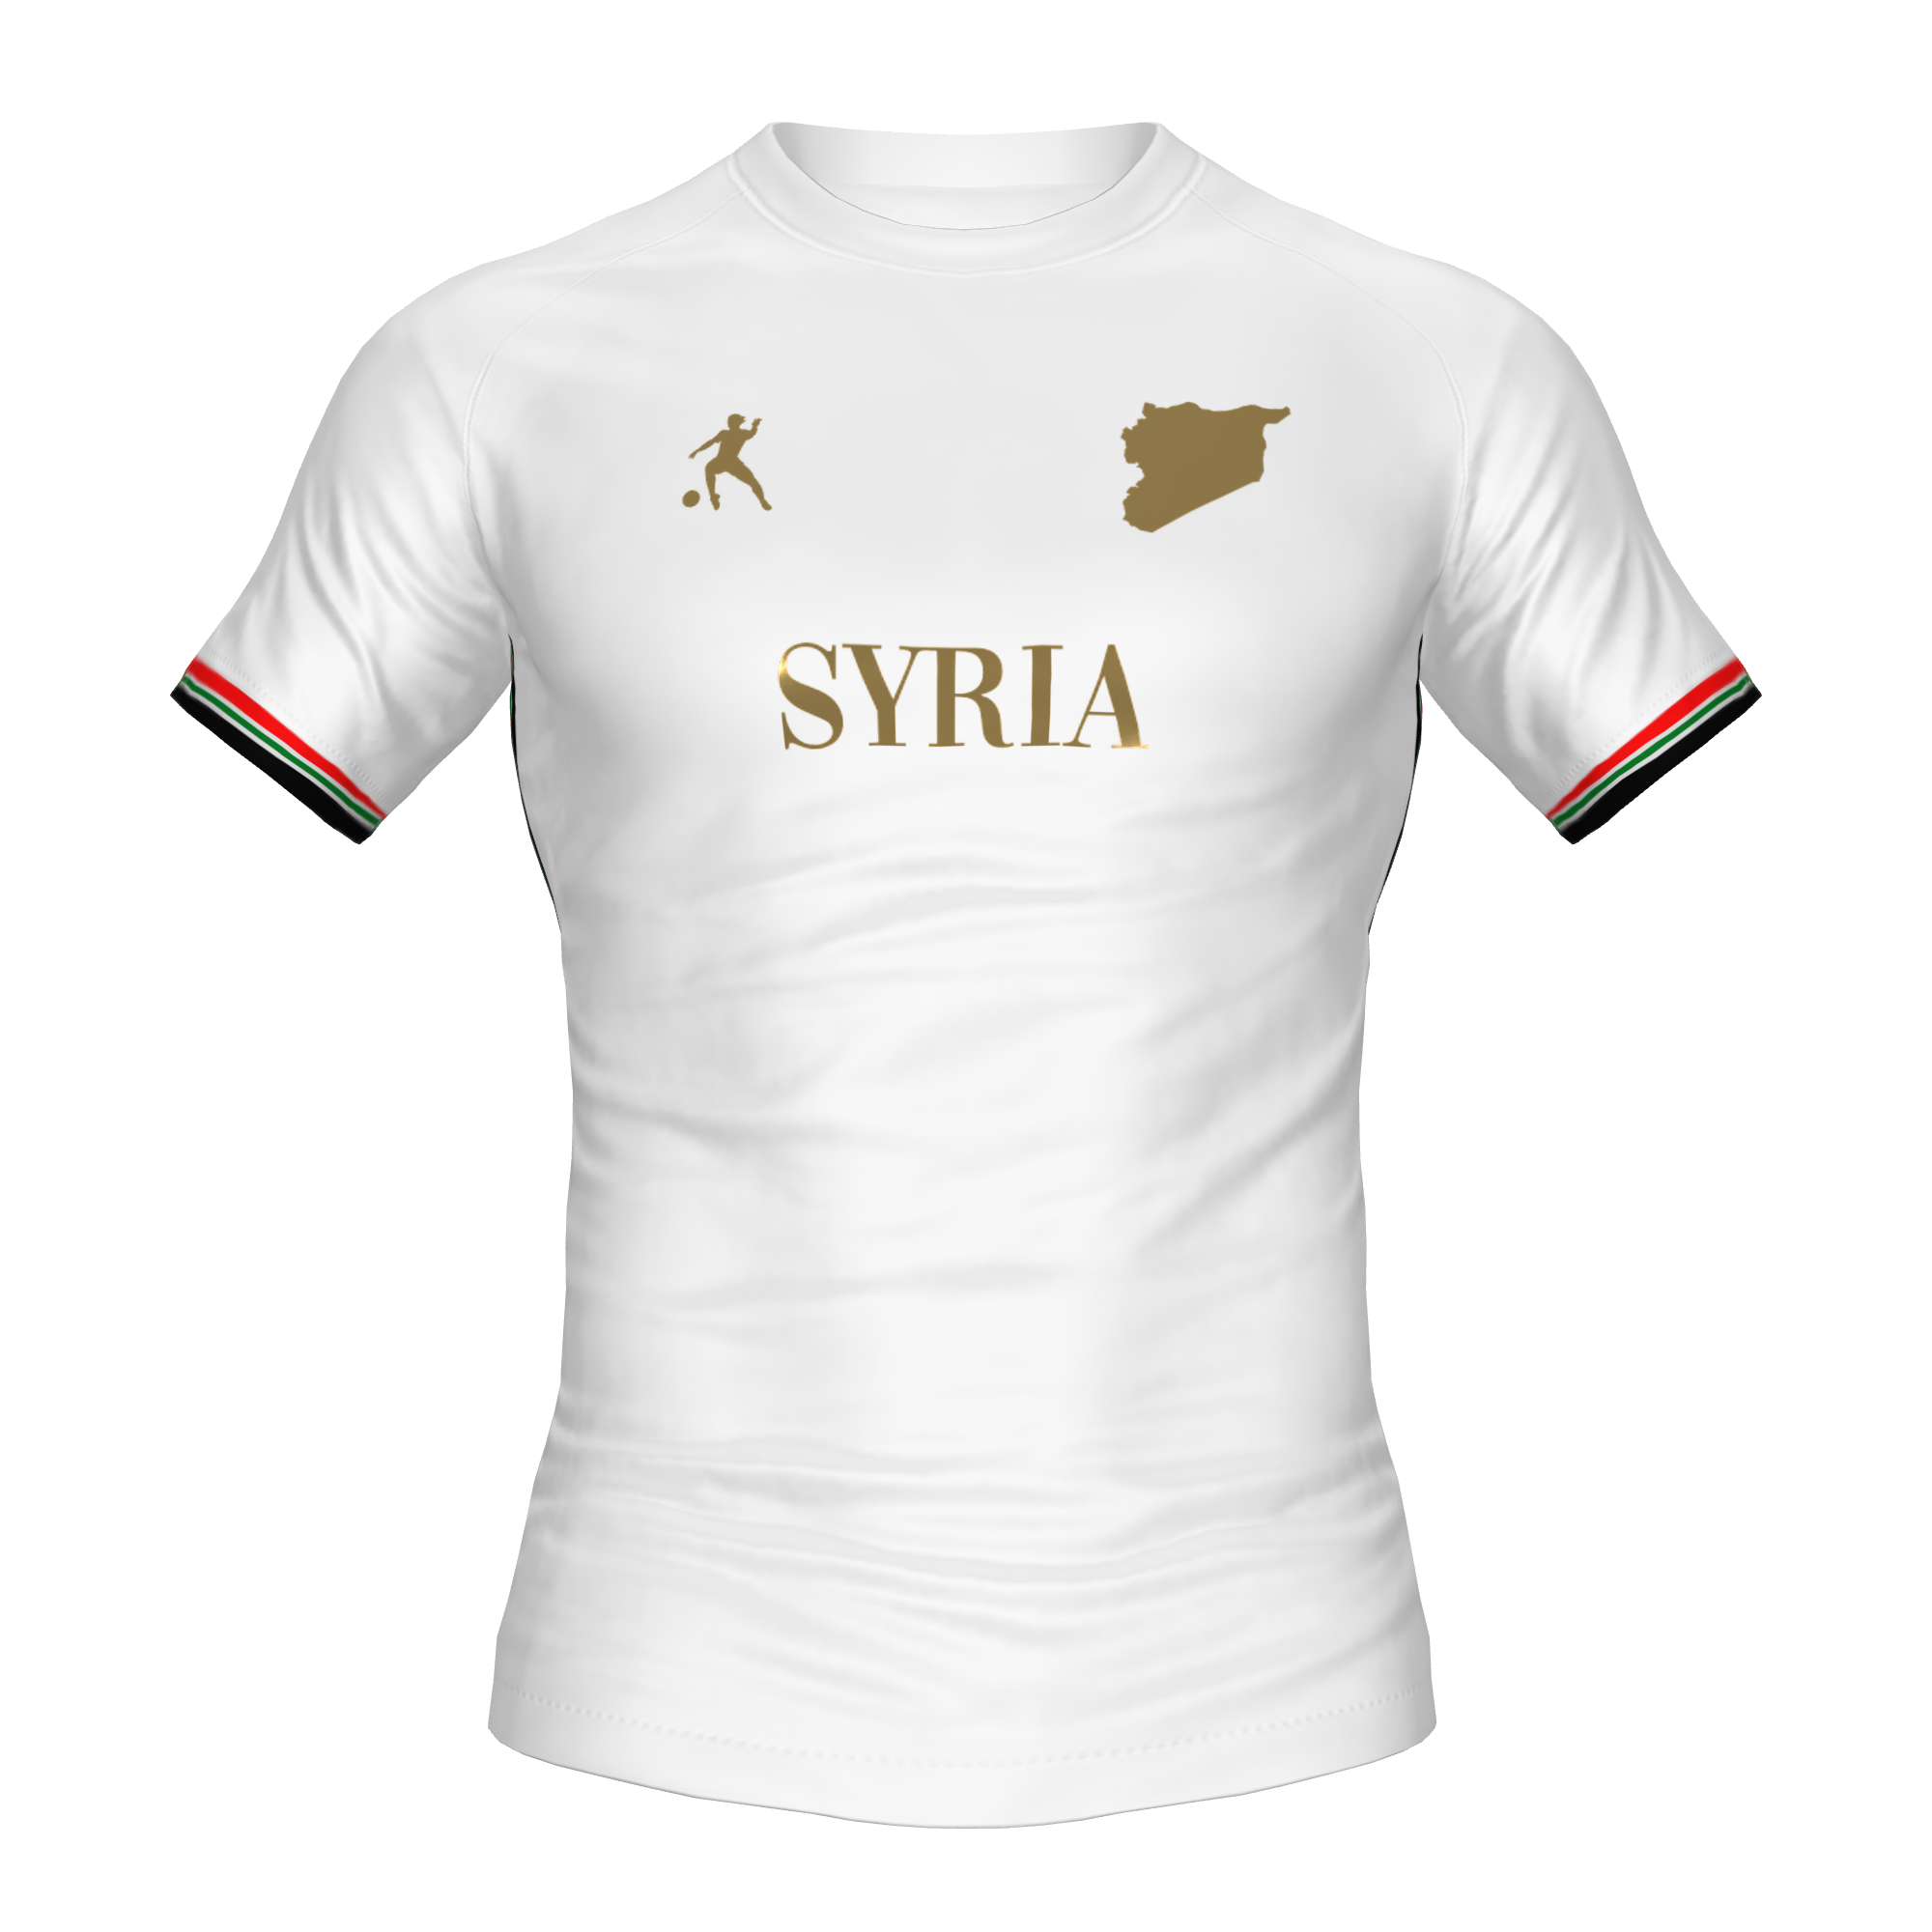 SYRIA FOOTBALL SHIRT - LAIB